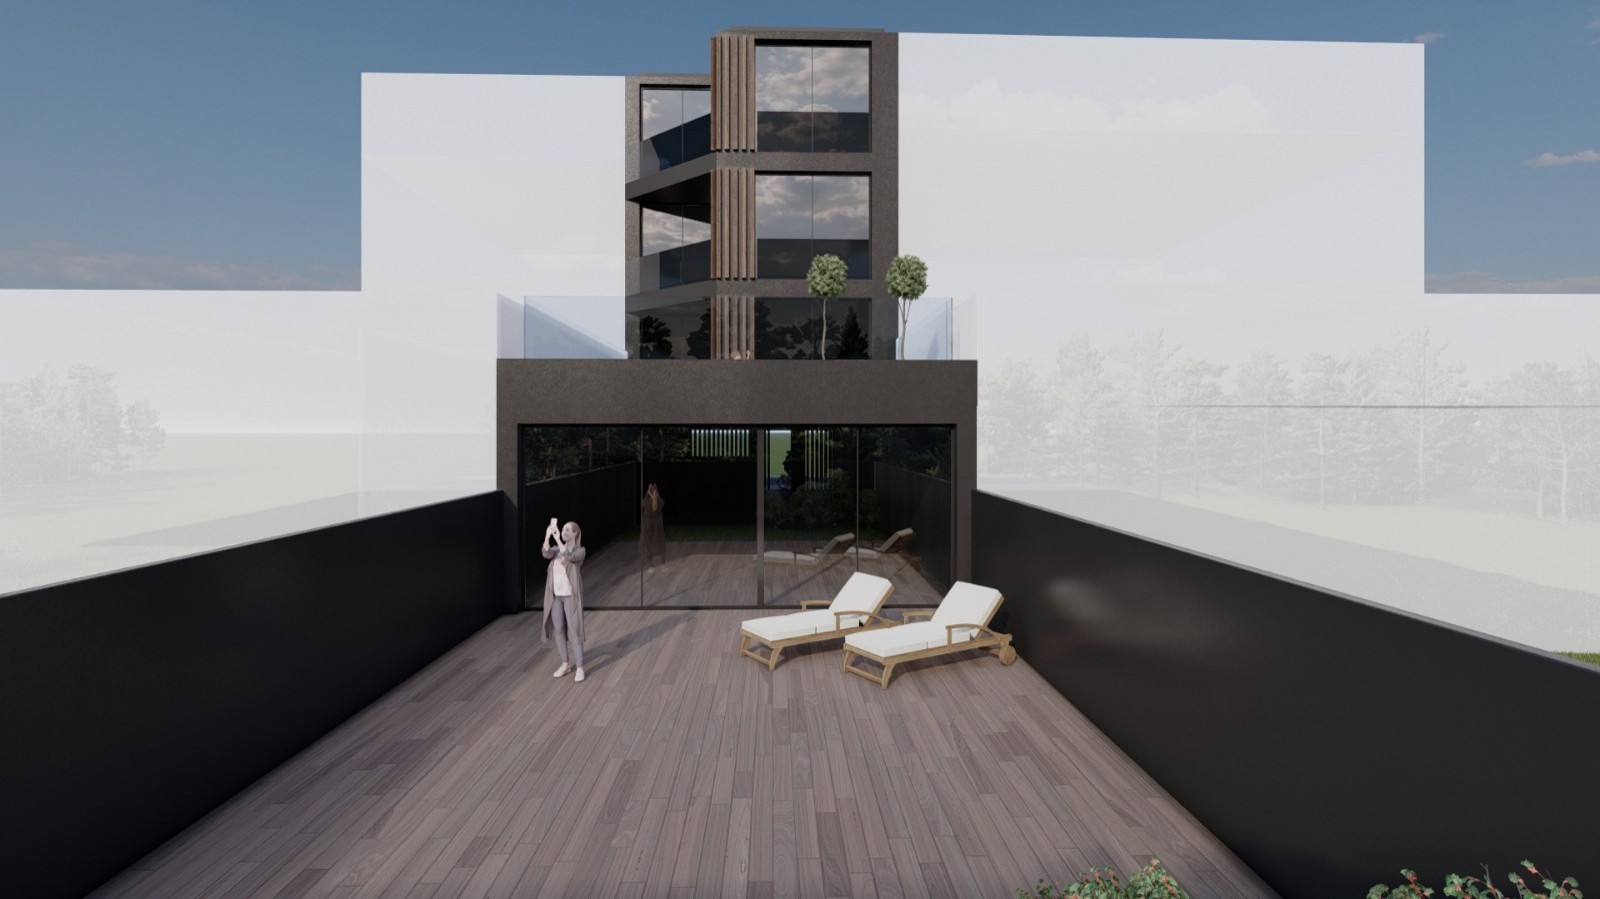 Venda: Prédio com projeto para 4 apartamentos T2, em Matosinhos_210239